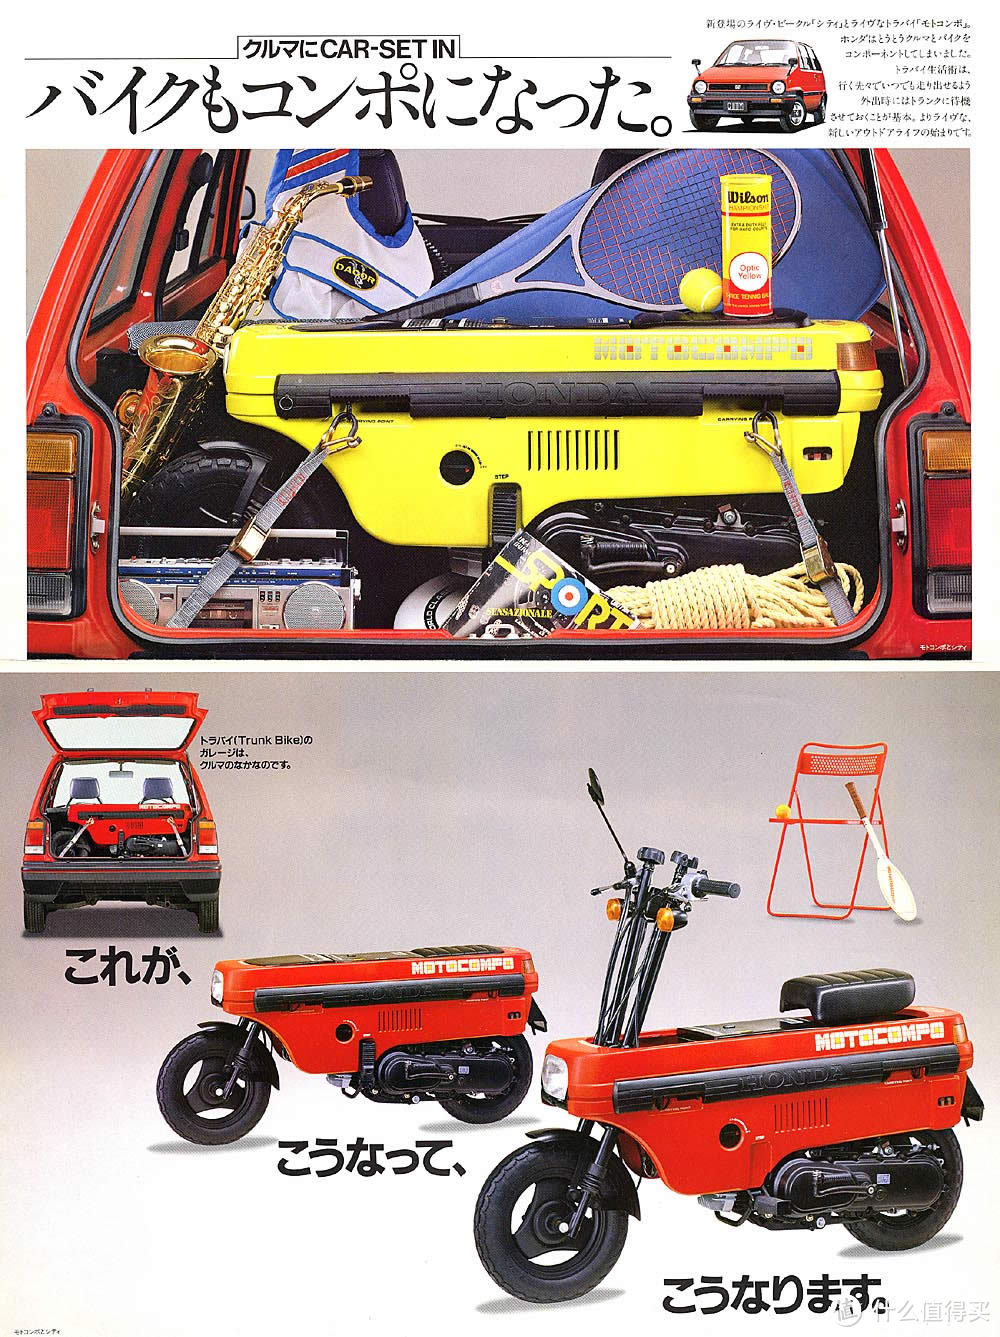 能放进后备箱的摩托车：1981年上市的本田 MOTOCOMPO 踏板车